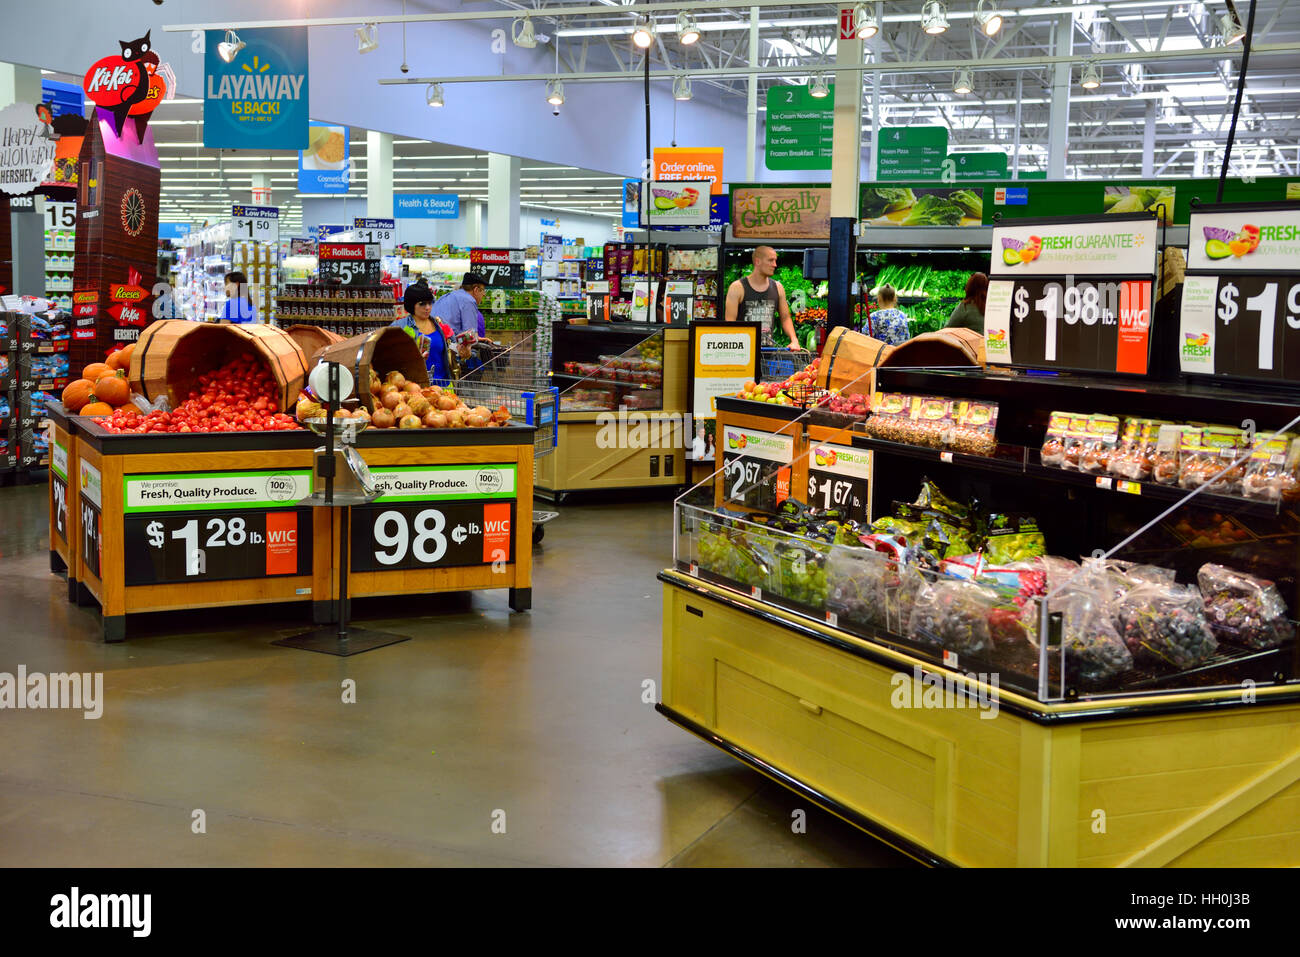 All'interno del supermercato con display di produrre Wall Mart, Miami, Florida Foto Stock